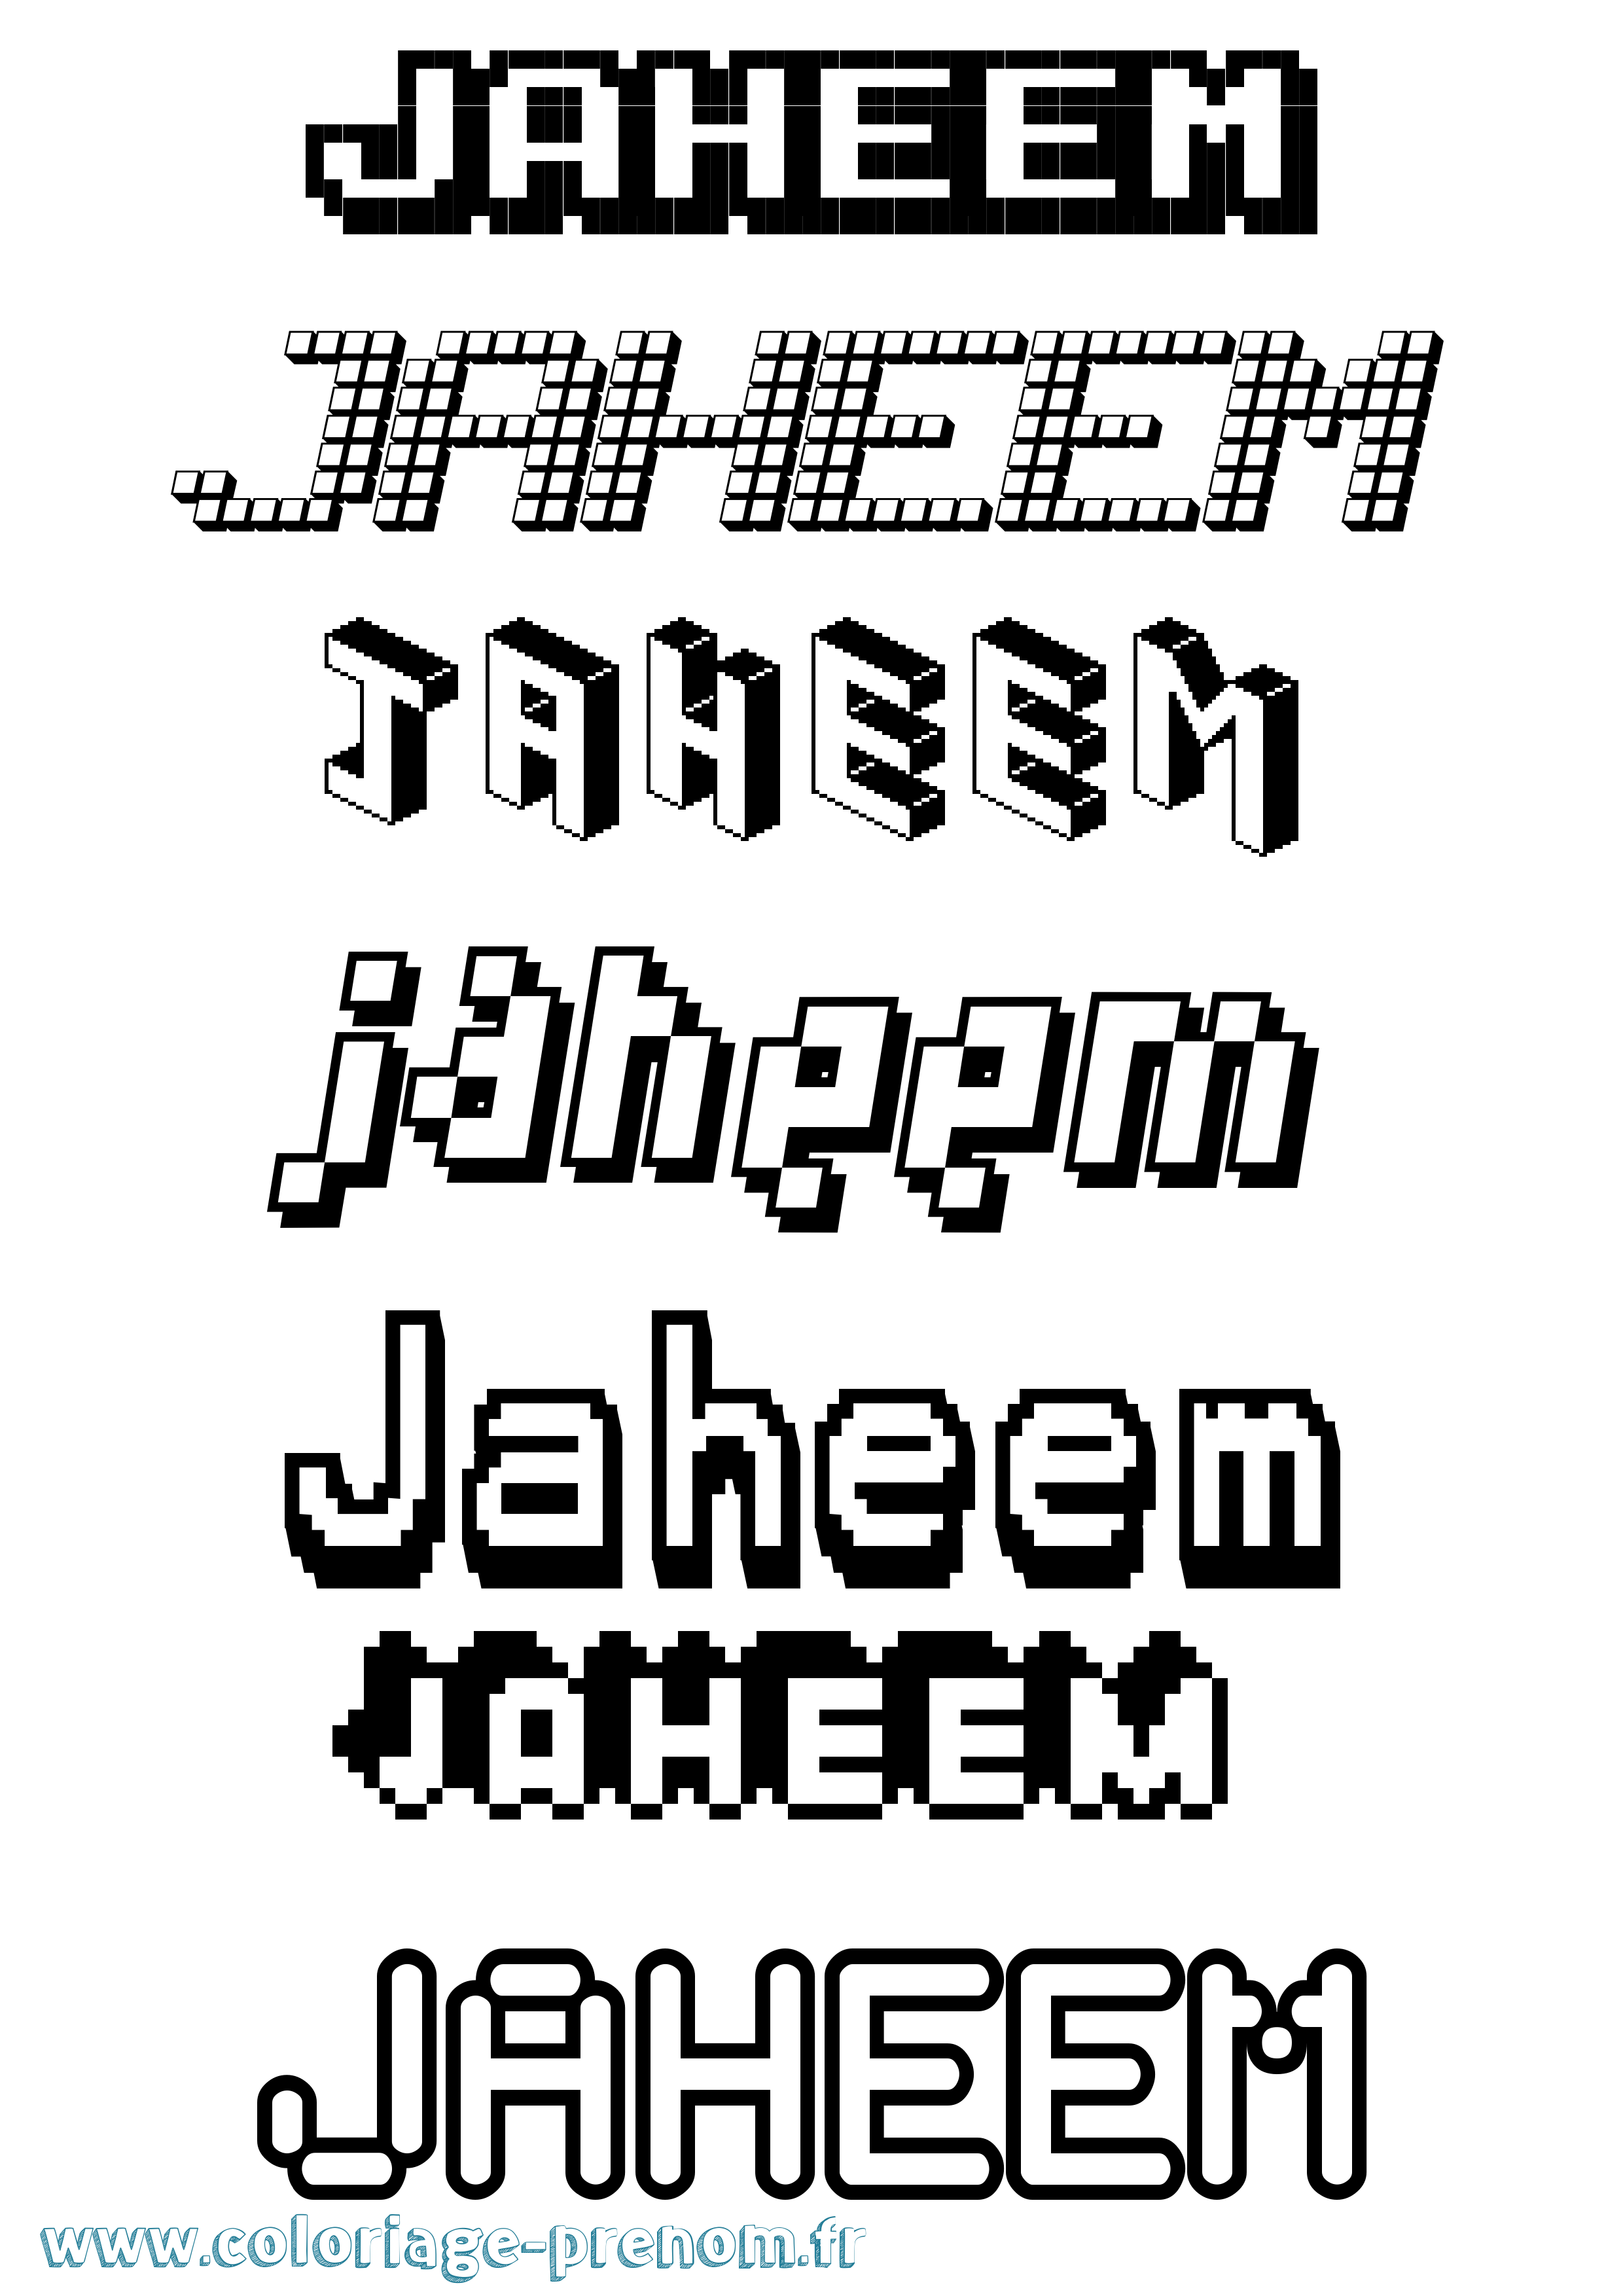 Coloriage prénom Jaheem Pixel